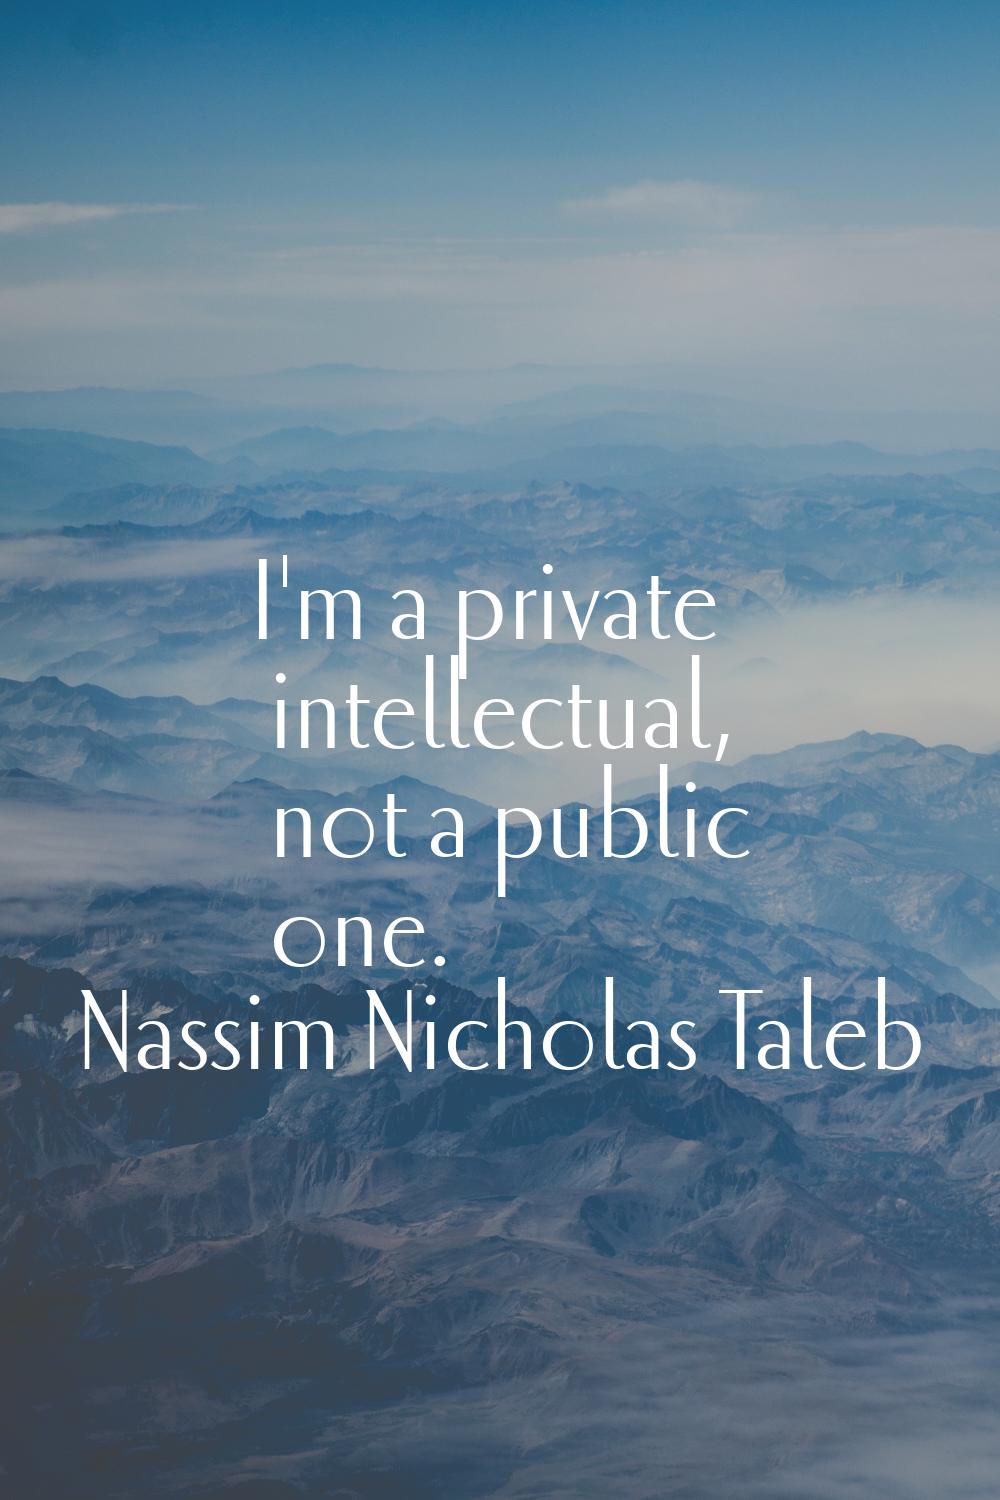 I'm a private intellectual, not a public one.